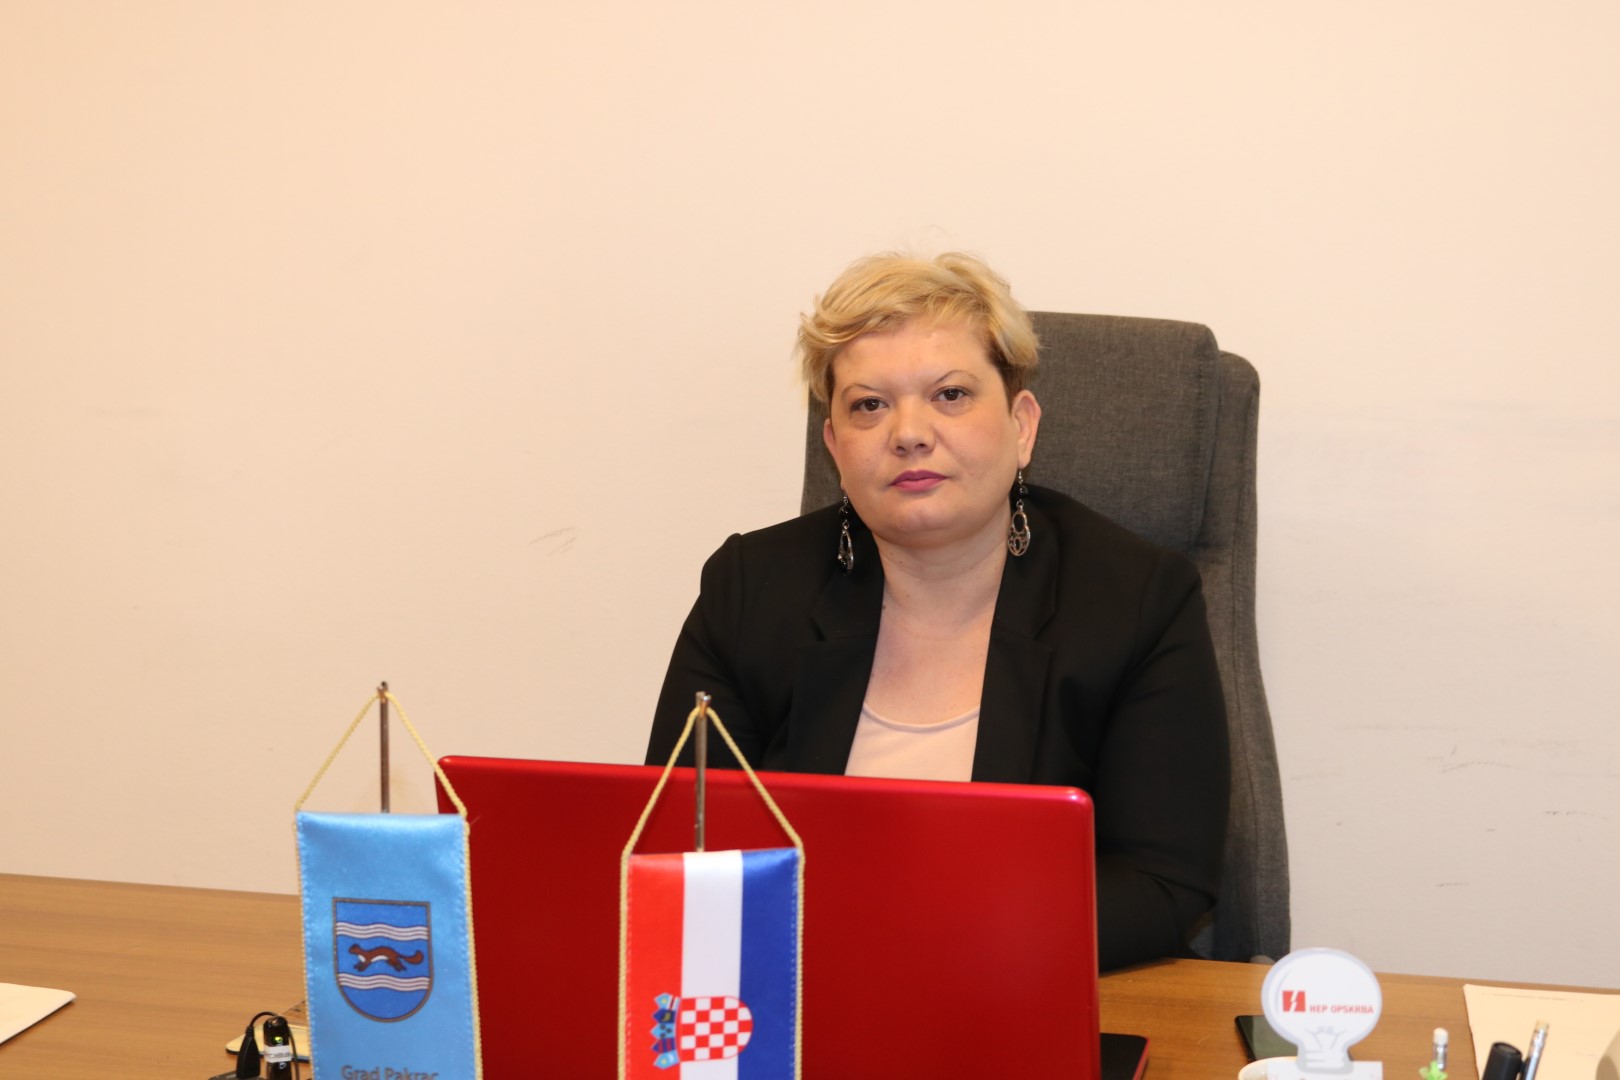 SLUŽBENO POTVRĐENO: Anamarija Blažević ponovo kandidat HDZ-a za gradonačelnicu